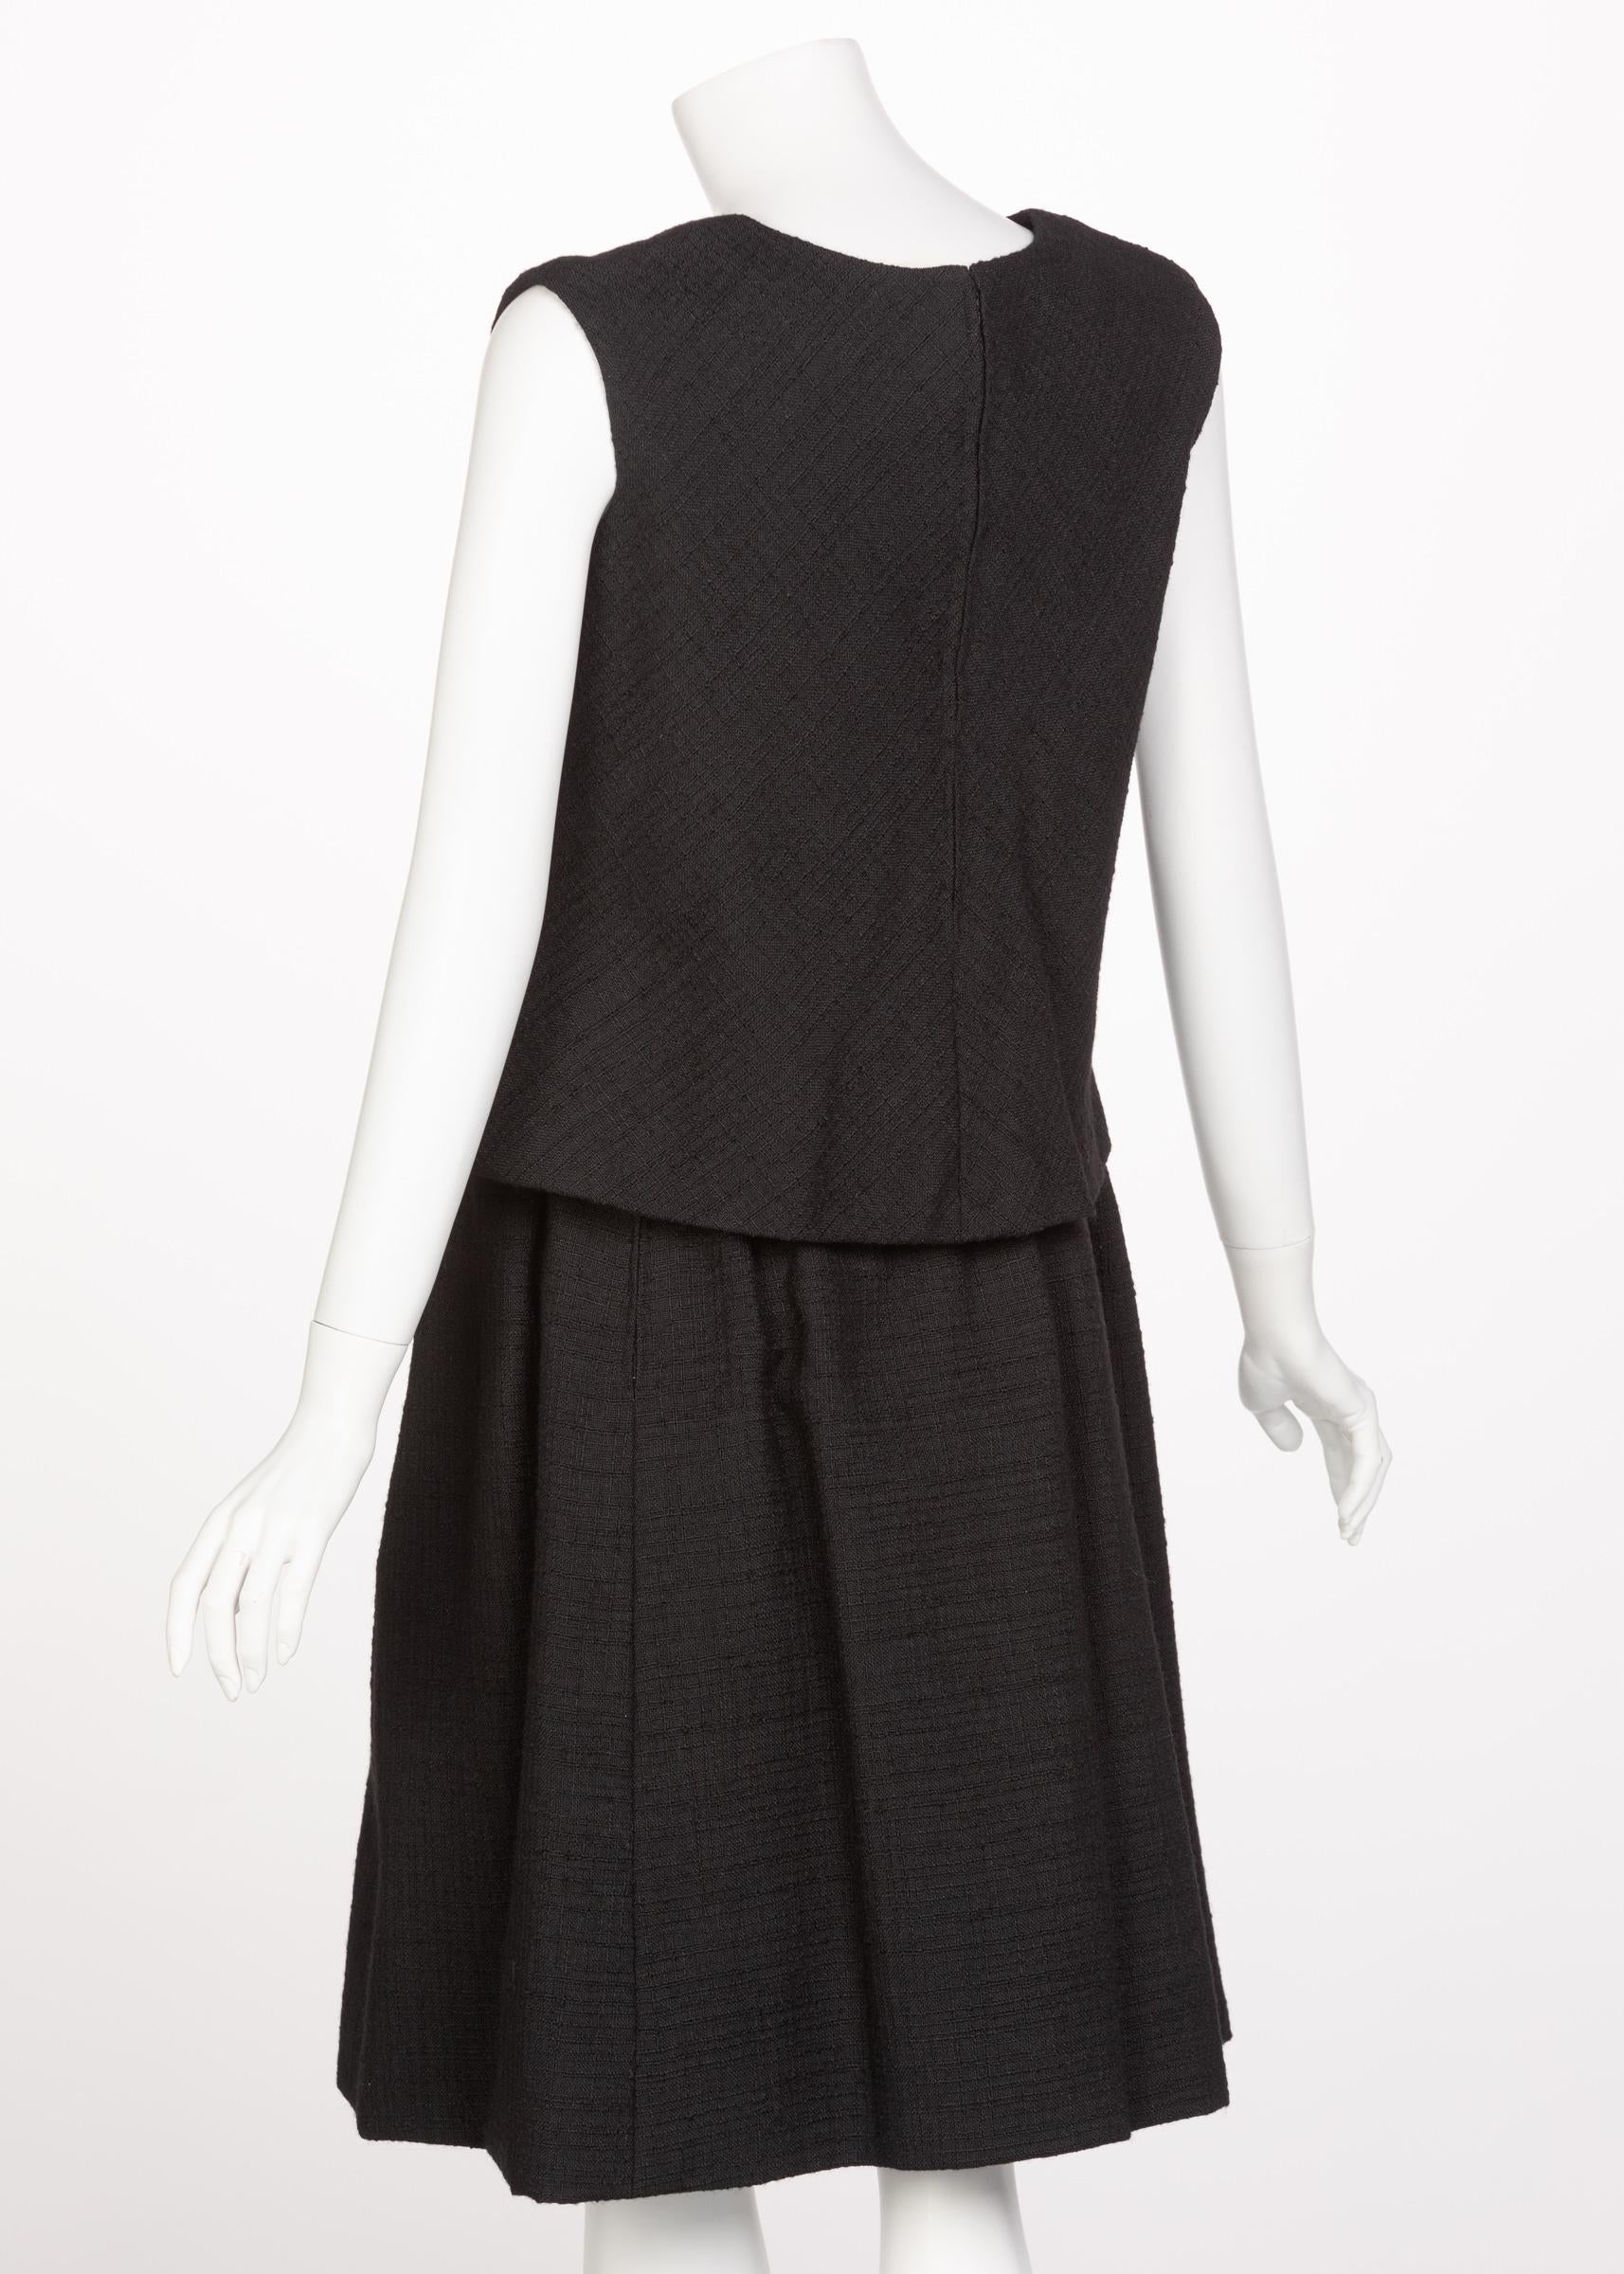 Norman Norell Couture Tailleur jupe tailleur noir/haut sans manches, années 1960 Bon état - En vente à Boca Raton, FL